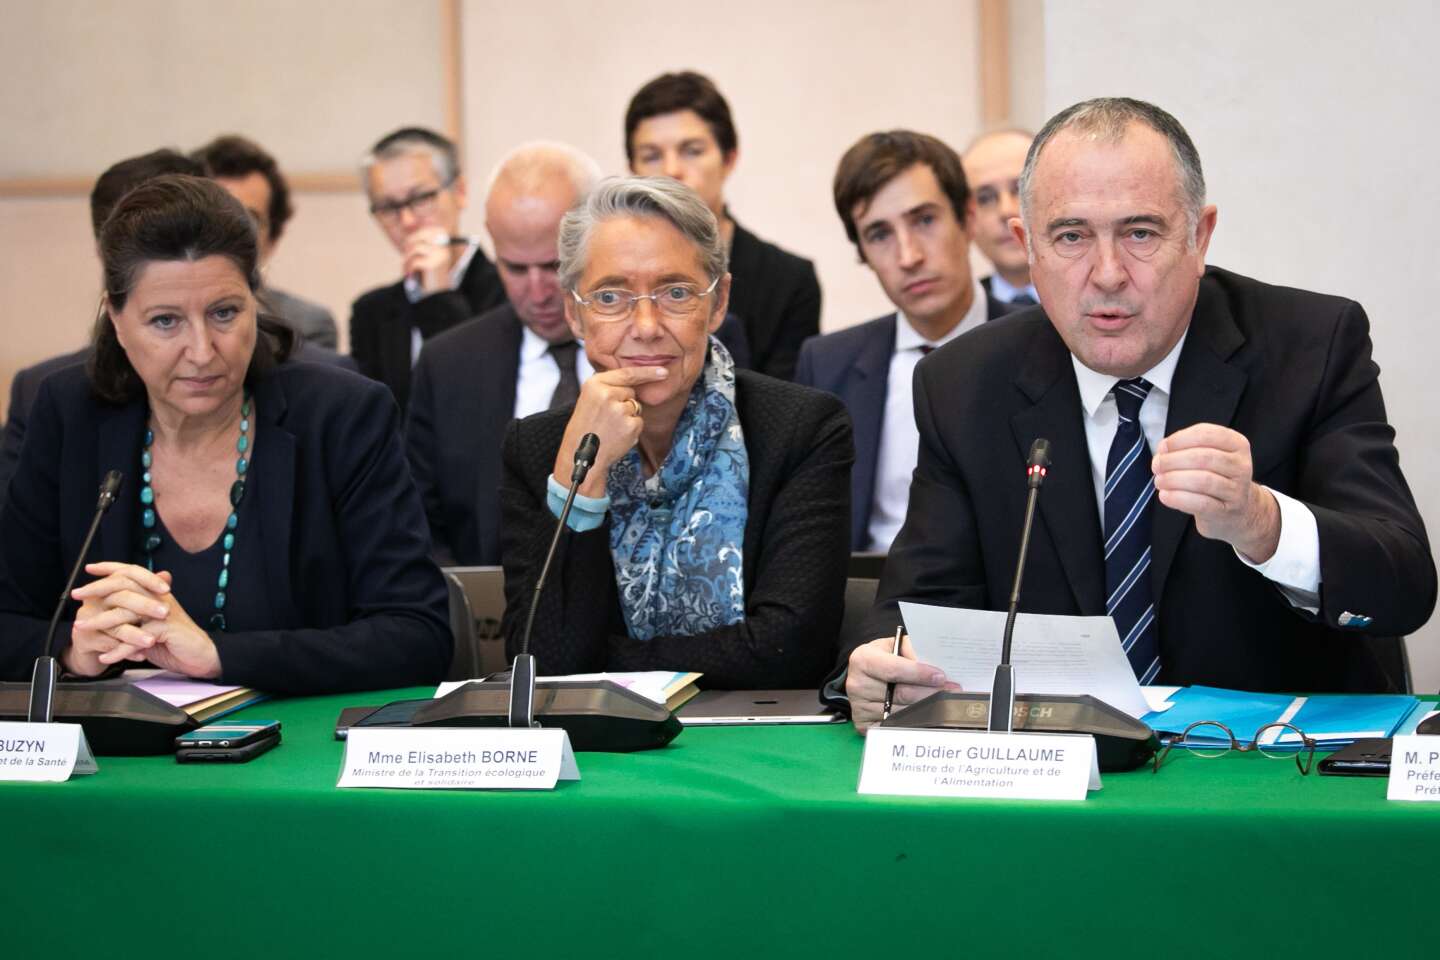 Incendie de Rouen : l’Etat met en place un « comité pour la transparence et le dialogue »